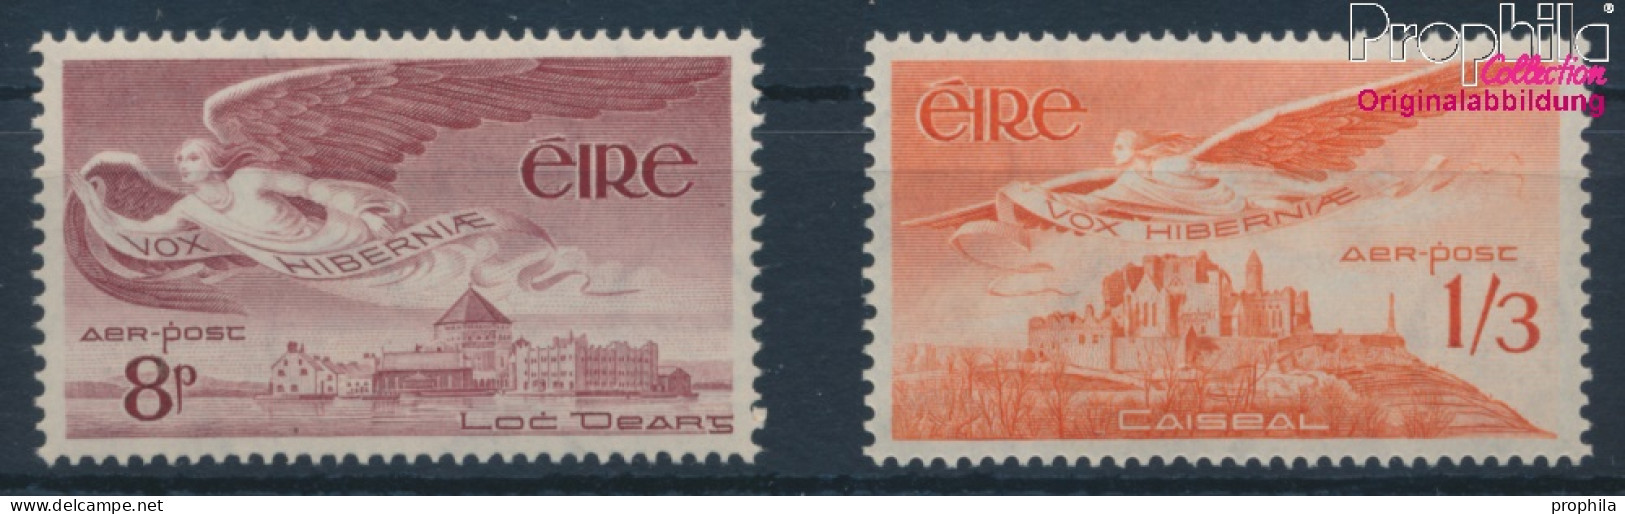 Irland 124-125 (kompl.Ausg.) Postfrisch 1954 Engel (10398342 - Nuovi